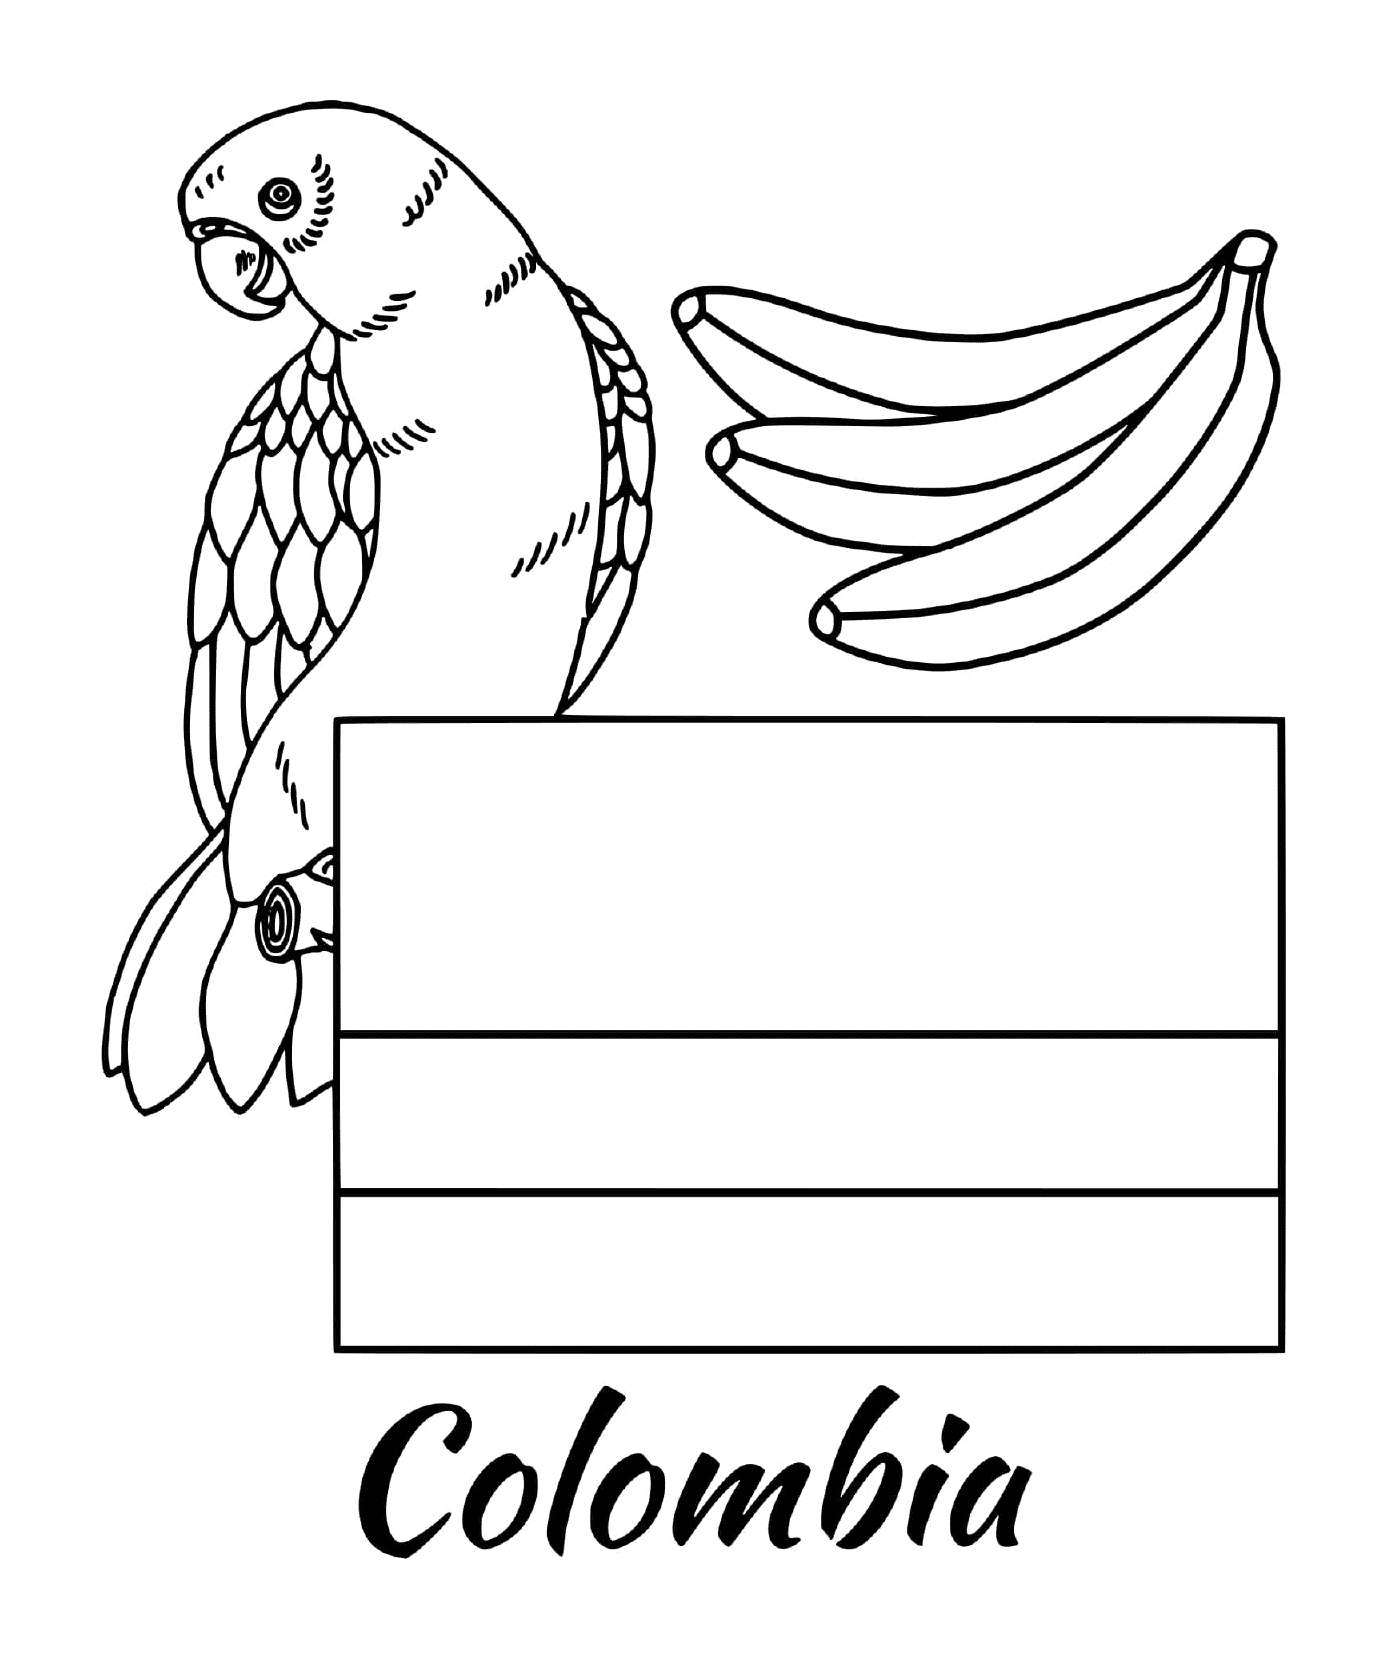  哥伦比亚国旗,鹦鹉 